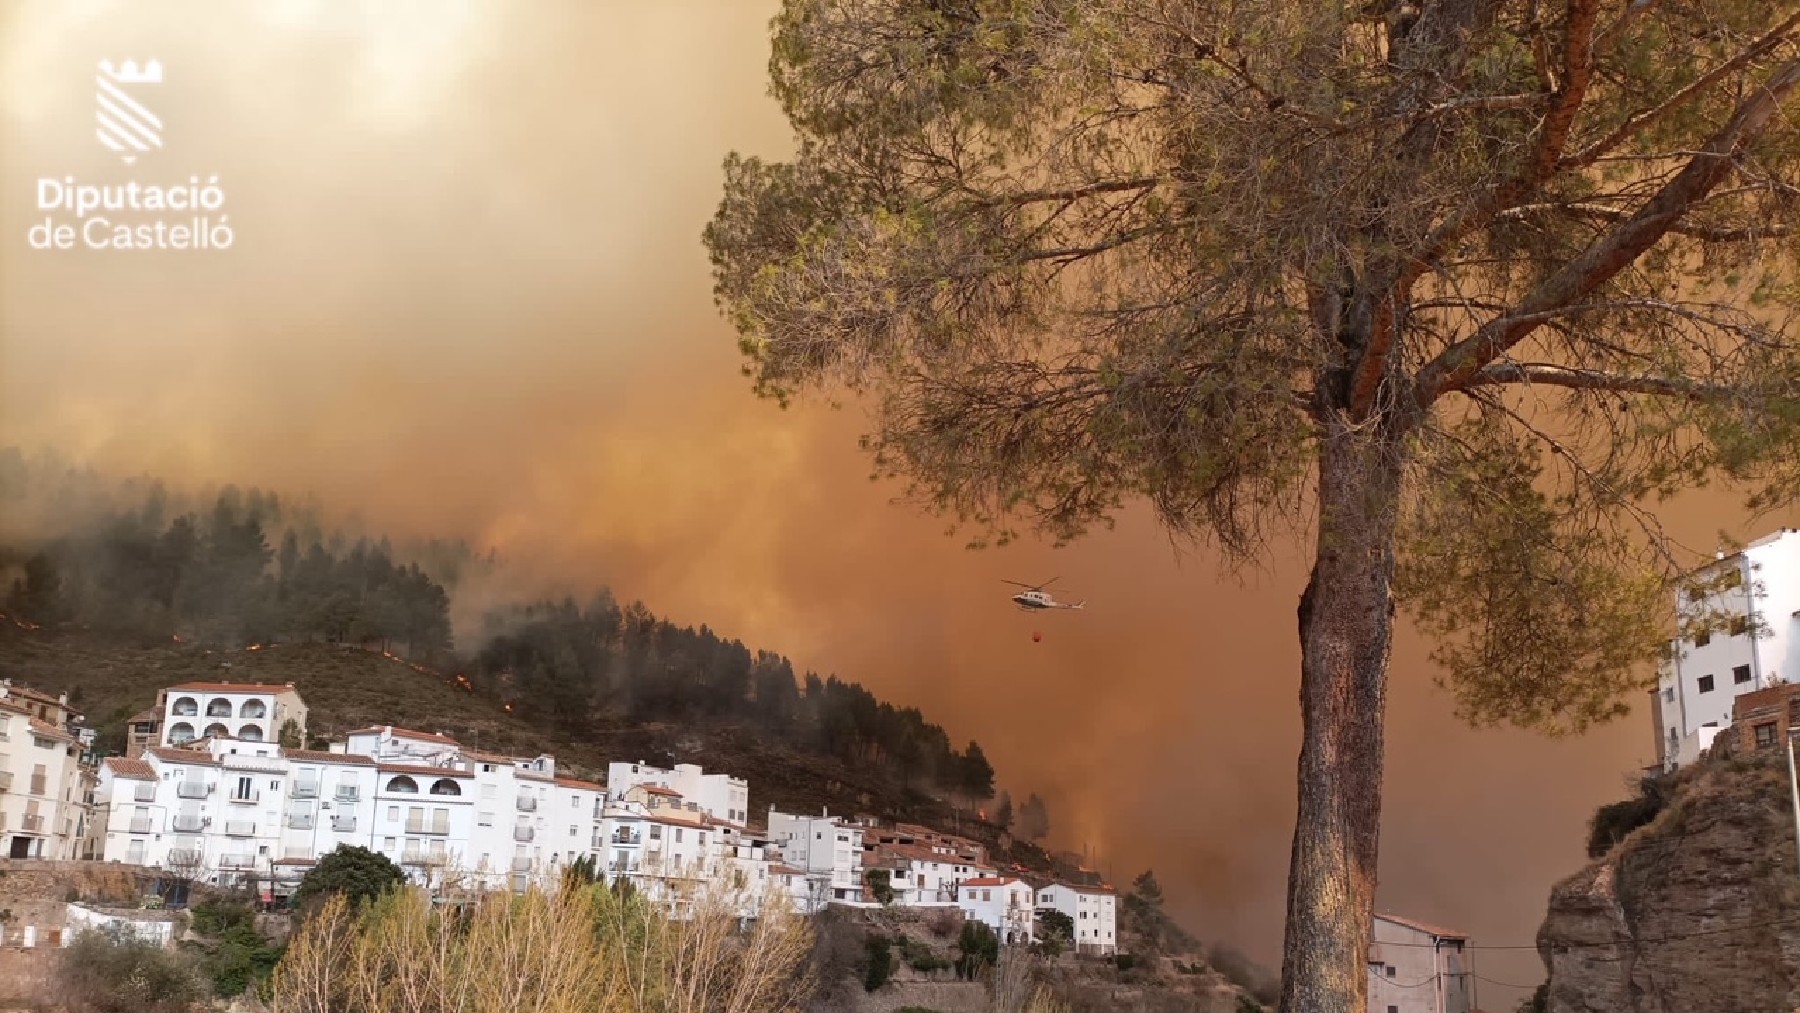 Una imagen del incendio publicada por los bomberos de la Diputación de Castellón.